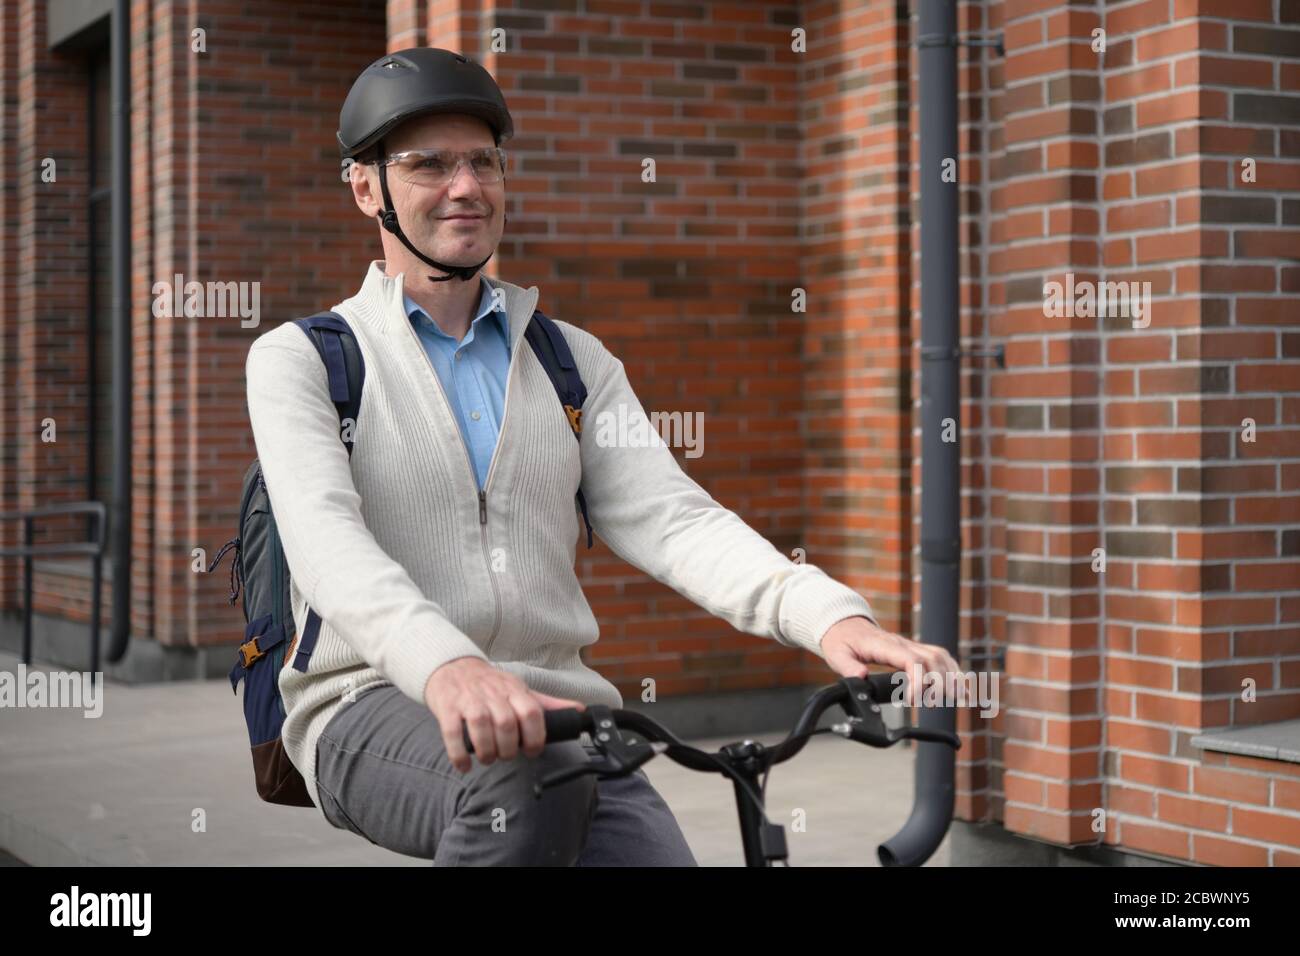 Reifer Kaukasischer Mann in einem Fahrradhelm auf seinem Fahrrad In einer Stadt Stockfoto